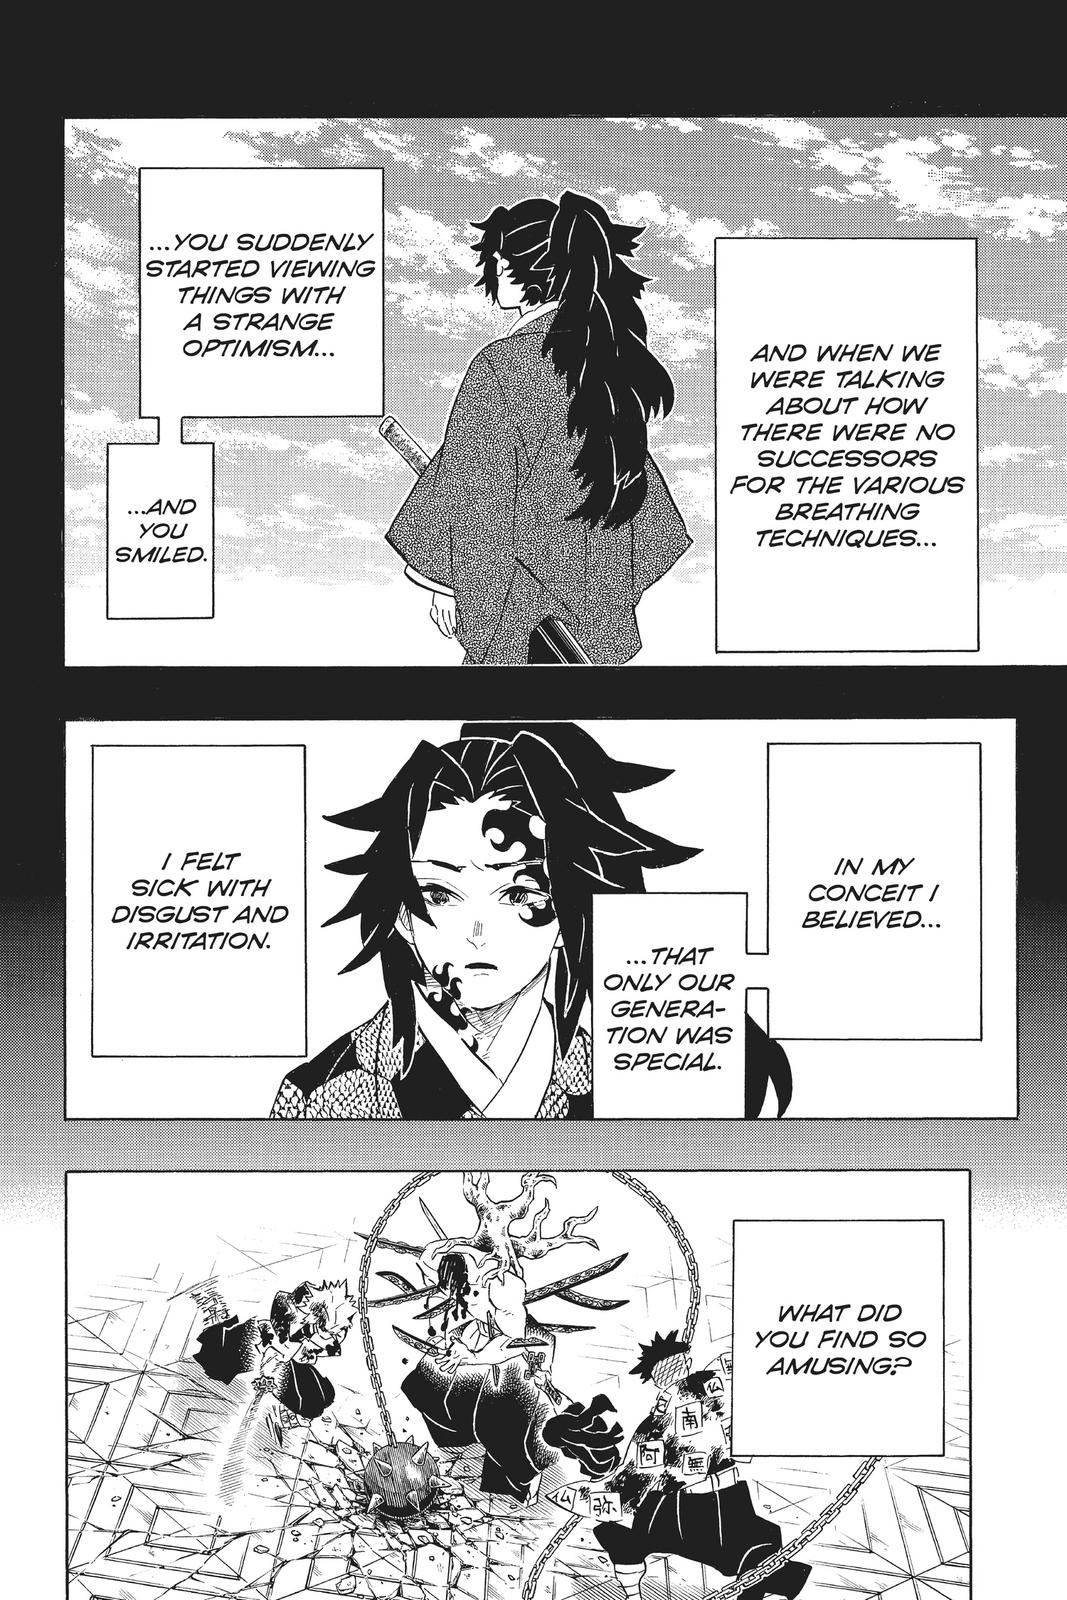 Demon Slayer Manga Manga Chapter - 176 - image 2